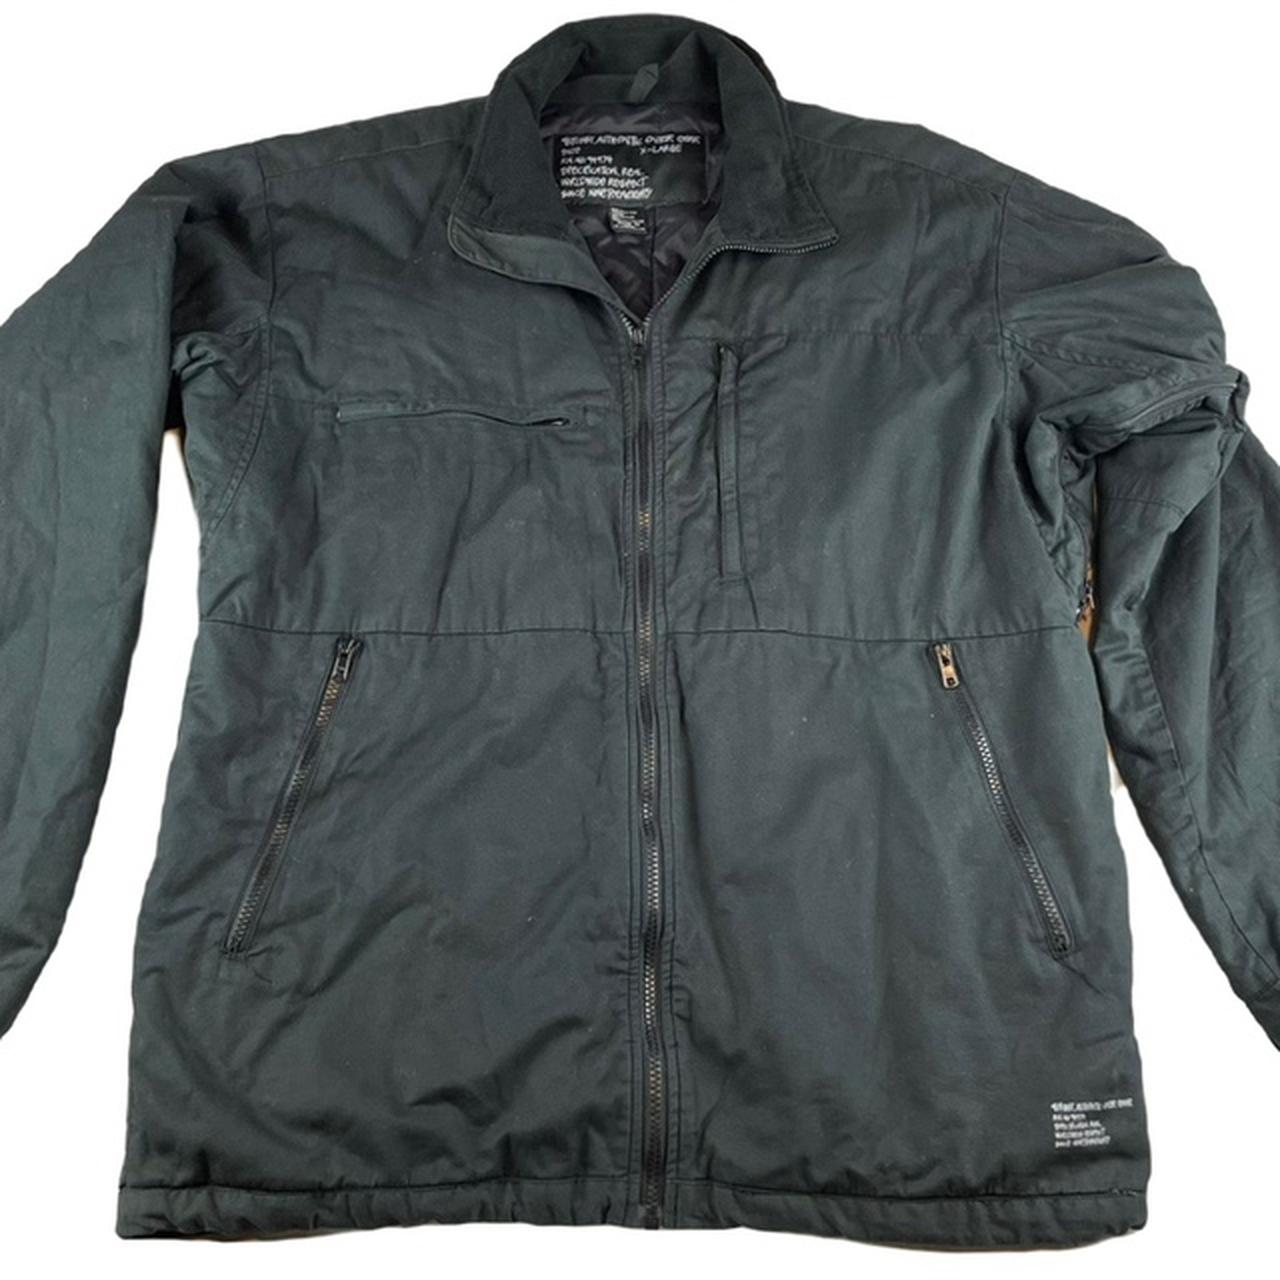 VTG Stussy thermolite zip up jacket// SZ XL// black... - Depop